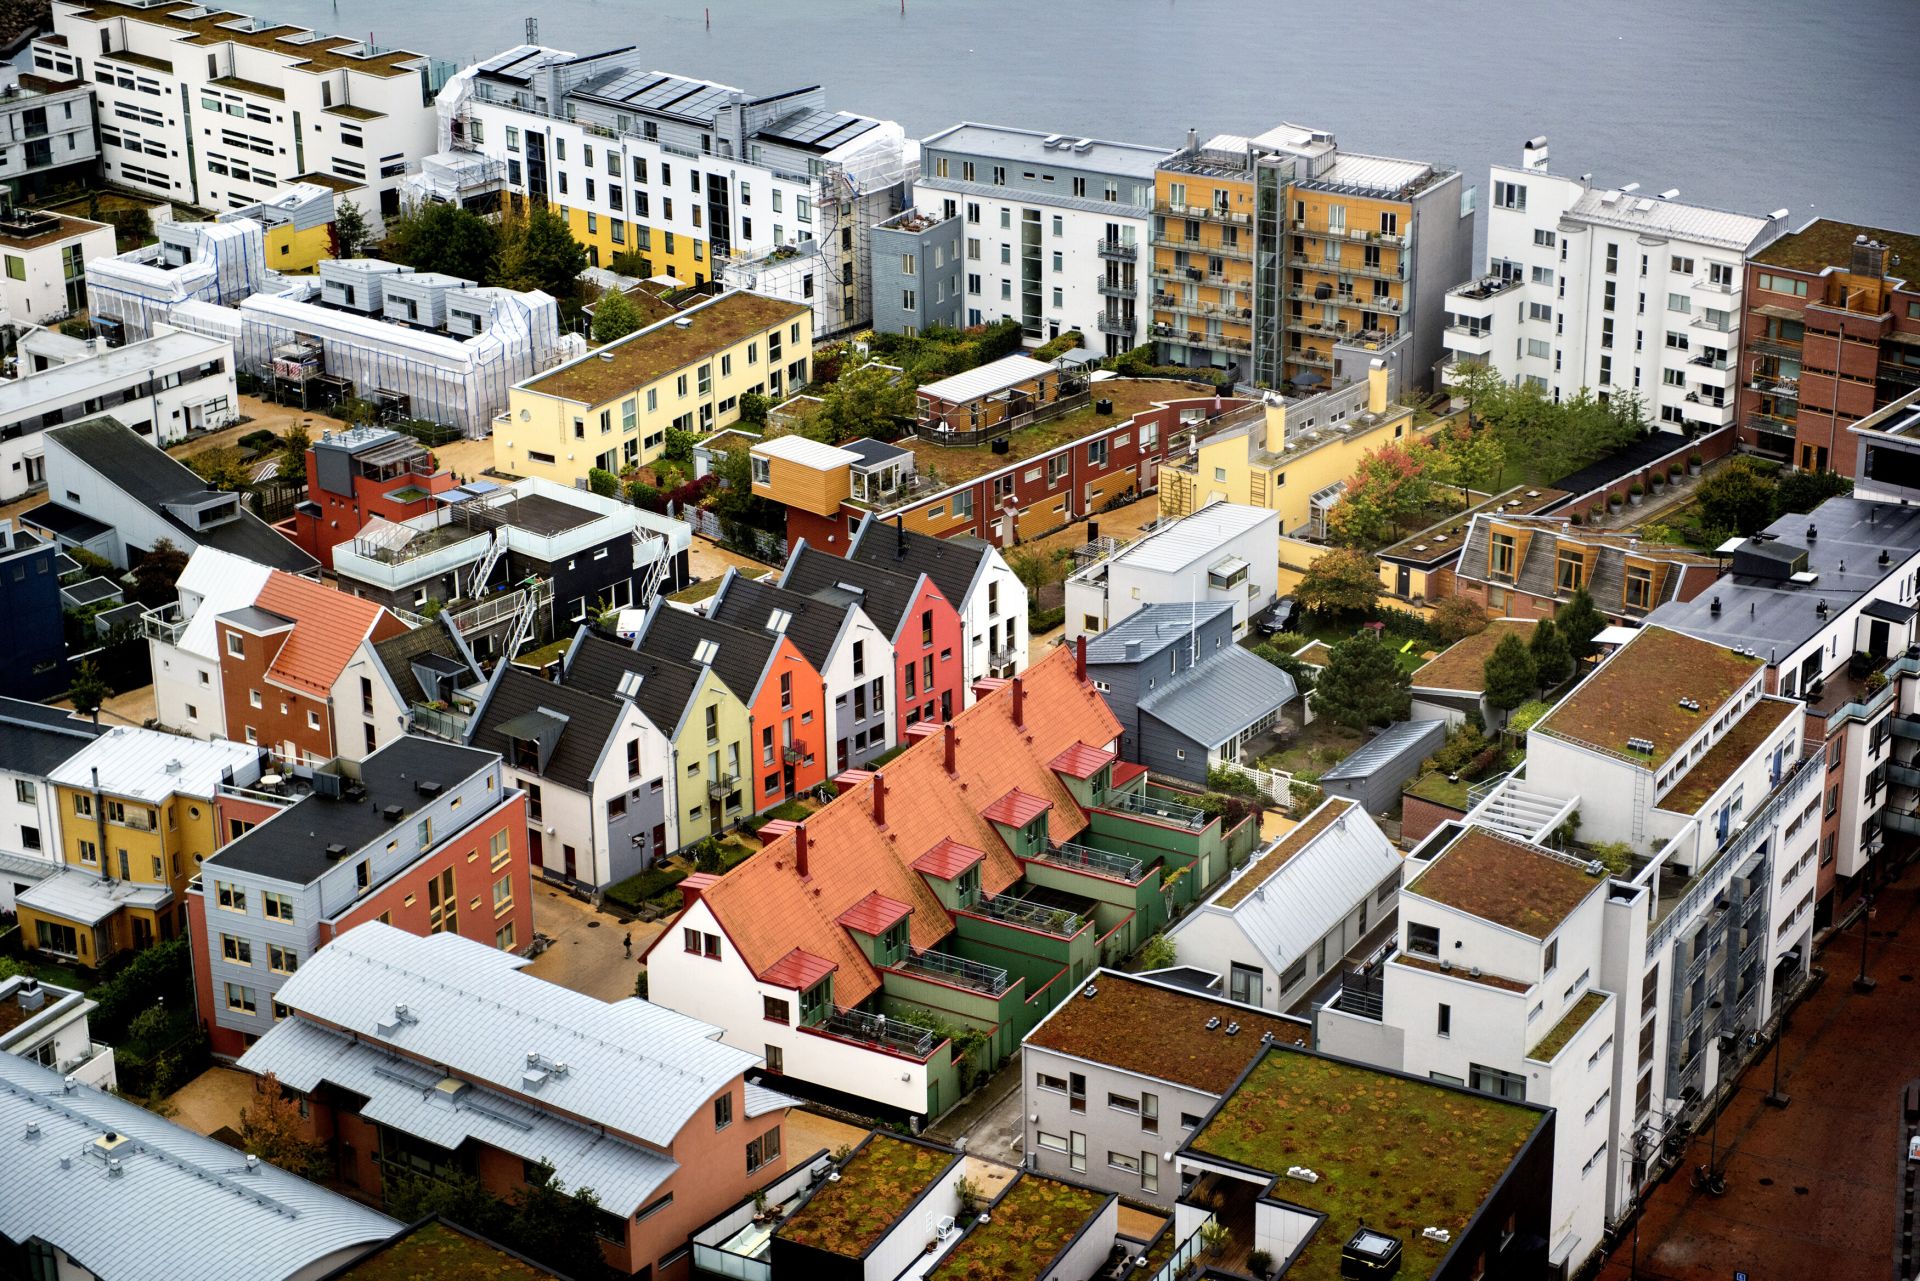 Västra Hamnen je fascinujúcim príkladom revitalizácie pôvodne priemyselnej štvrte na obytnú zónu.